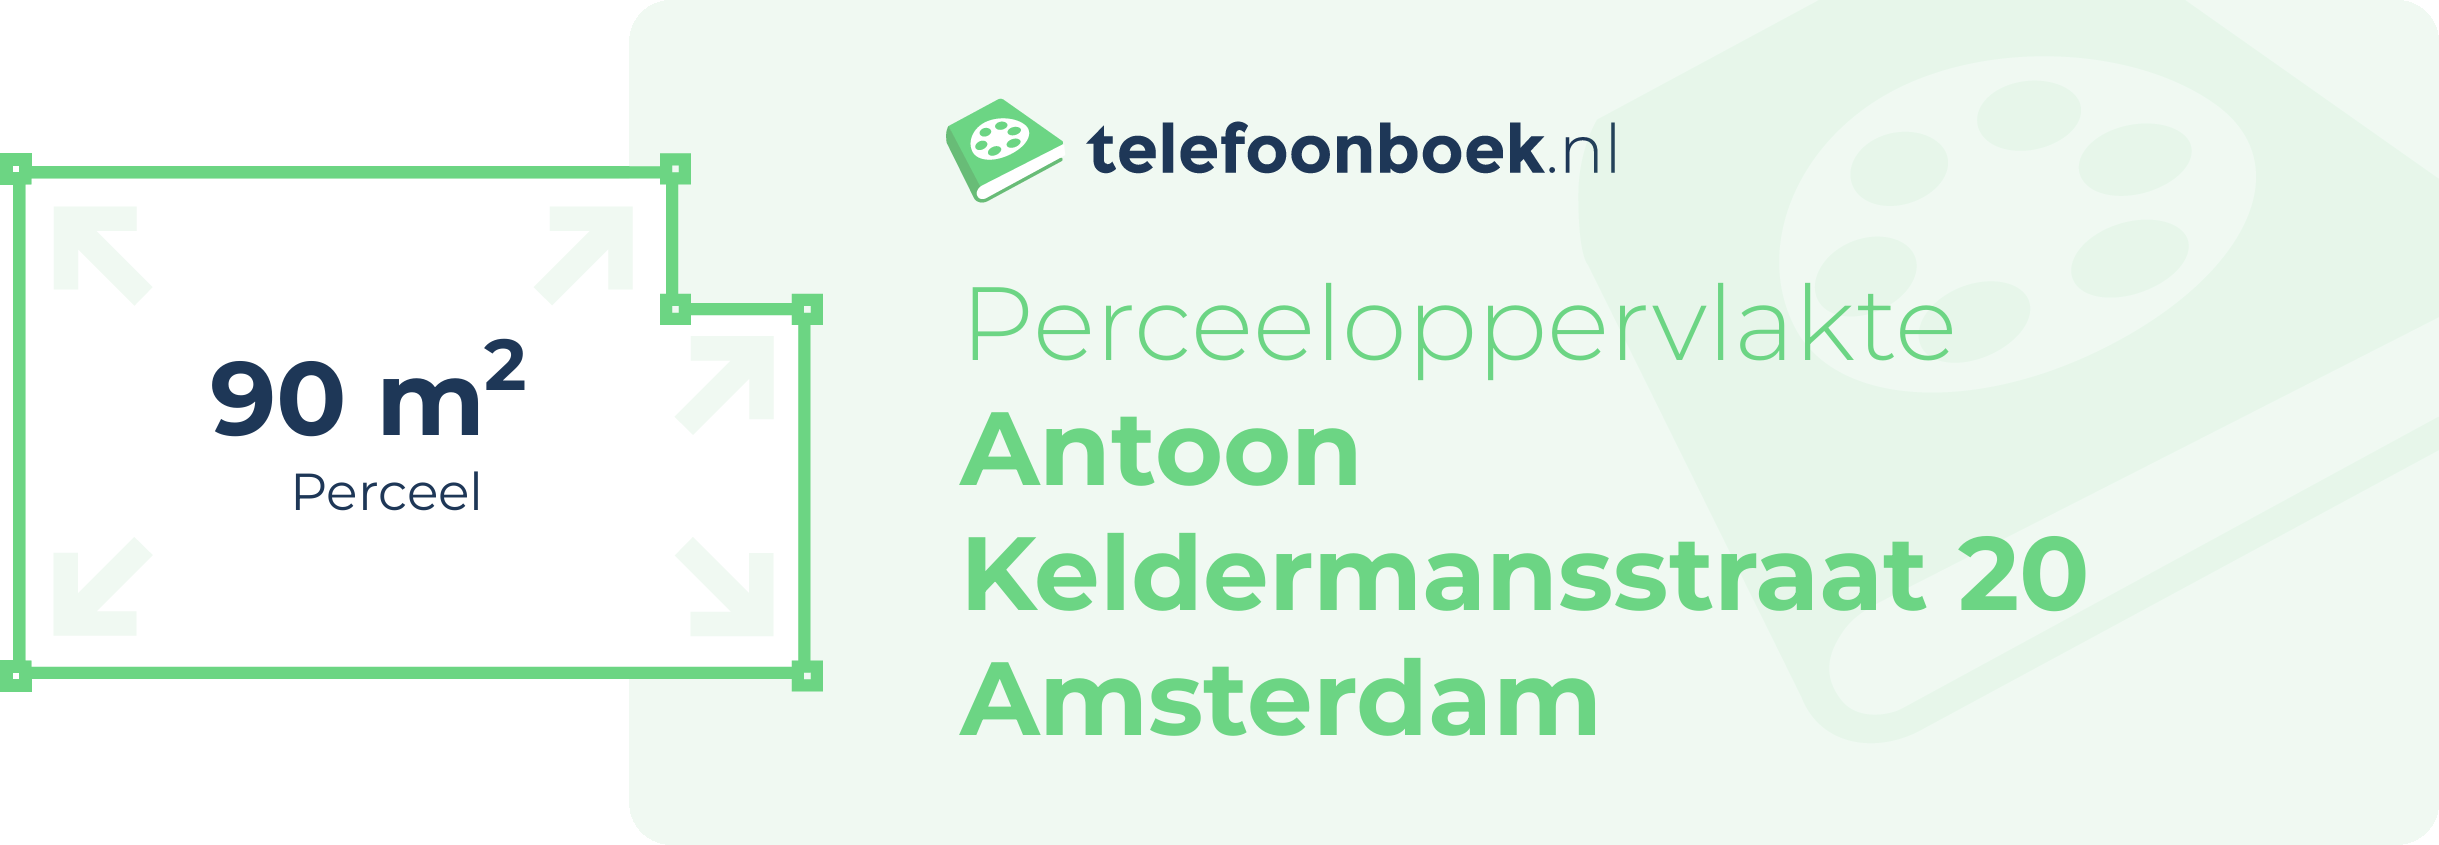 Perceeloppervlakte Antoon Keldermansstraat 20 Amsterdam